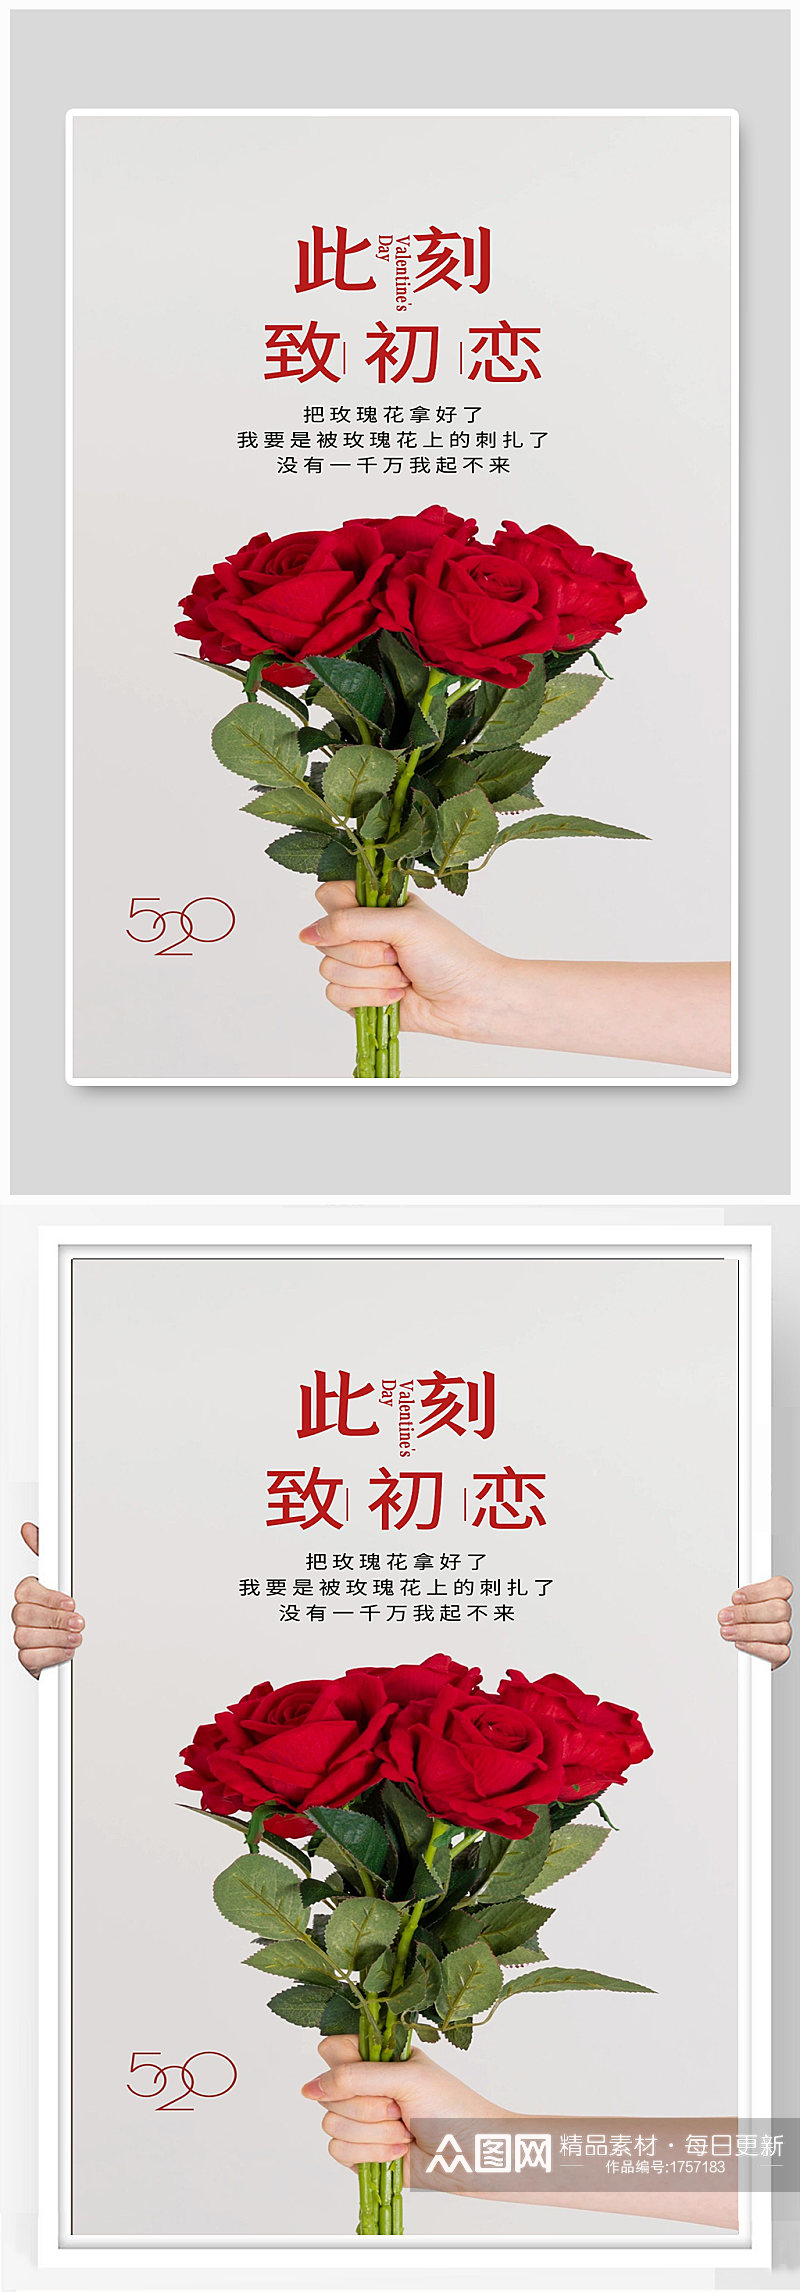 玫瑰花宣传海报设计素材